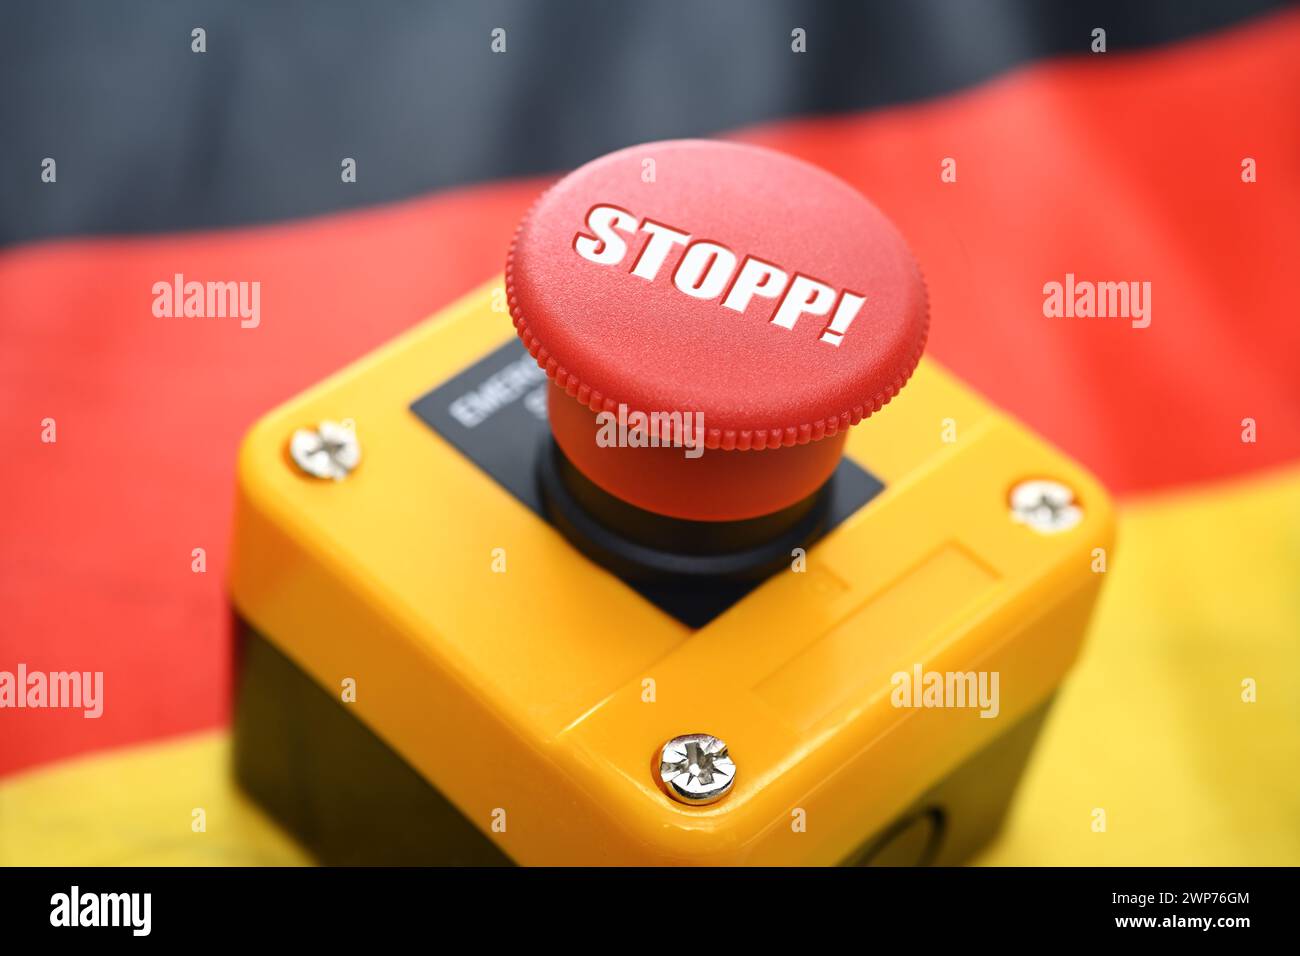 FOTOMONTAGE, Roter Knopf mit Aufschrift Stopp! auf einer Deutschlandfahne Stock Photo